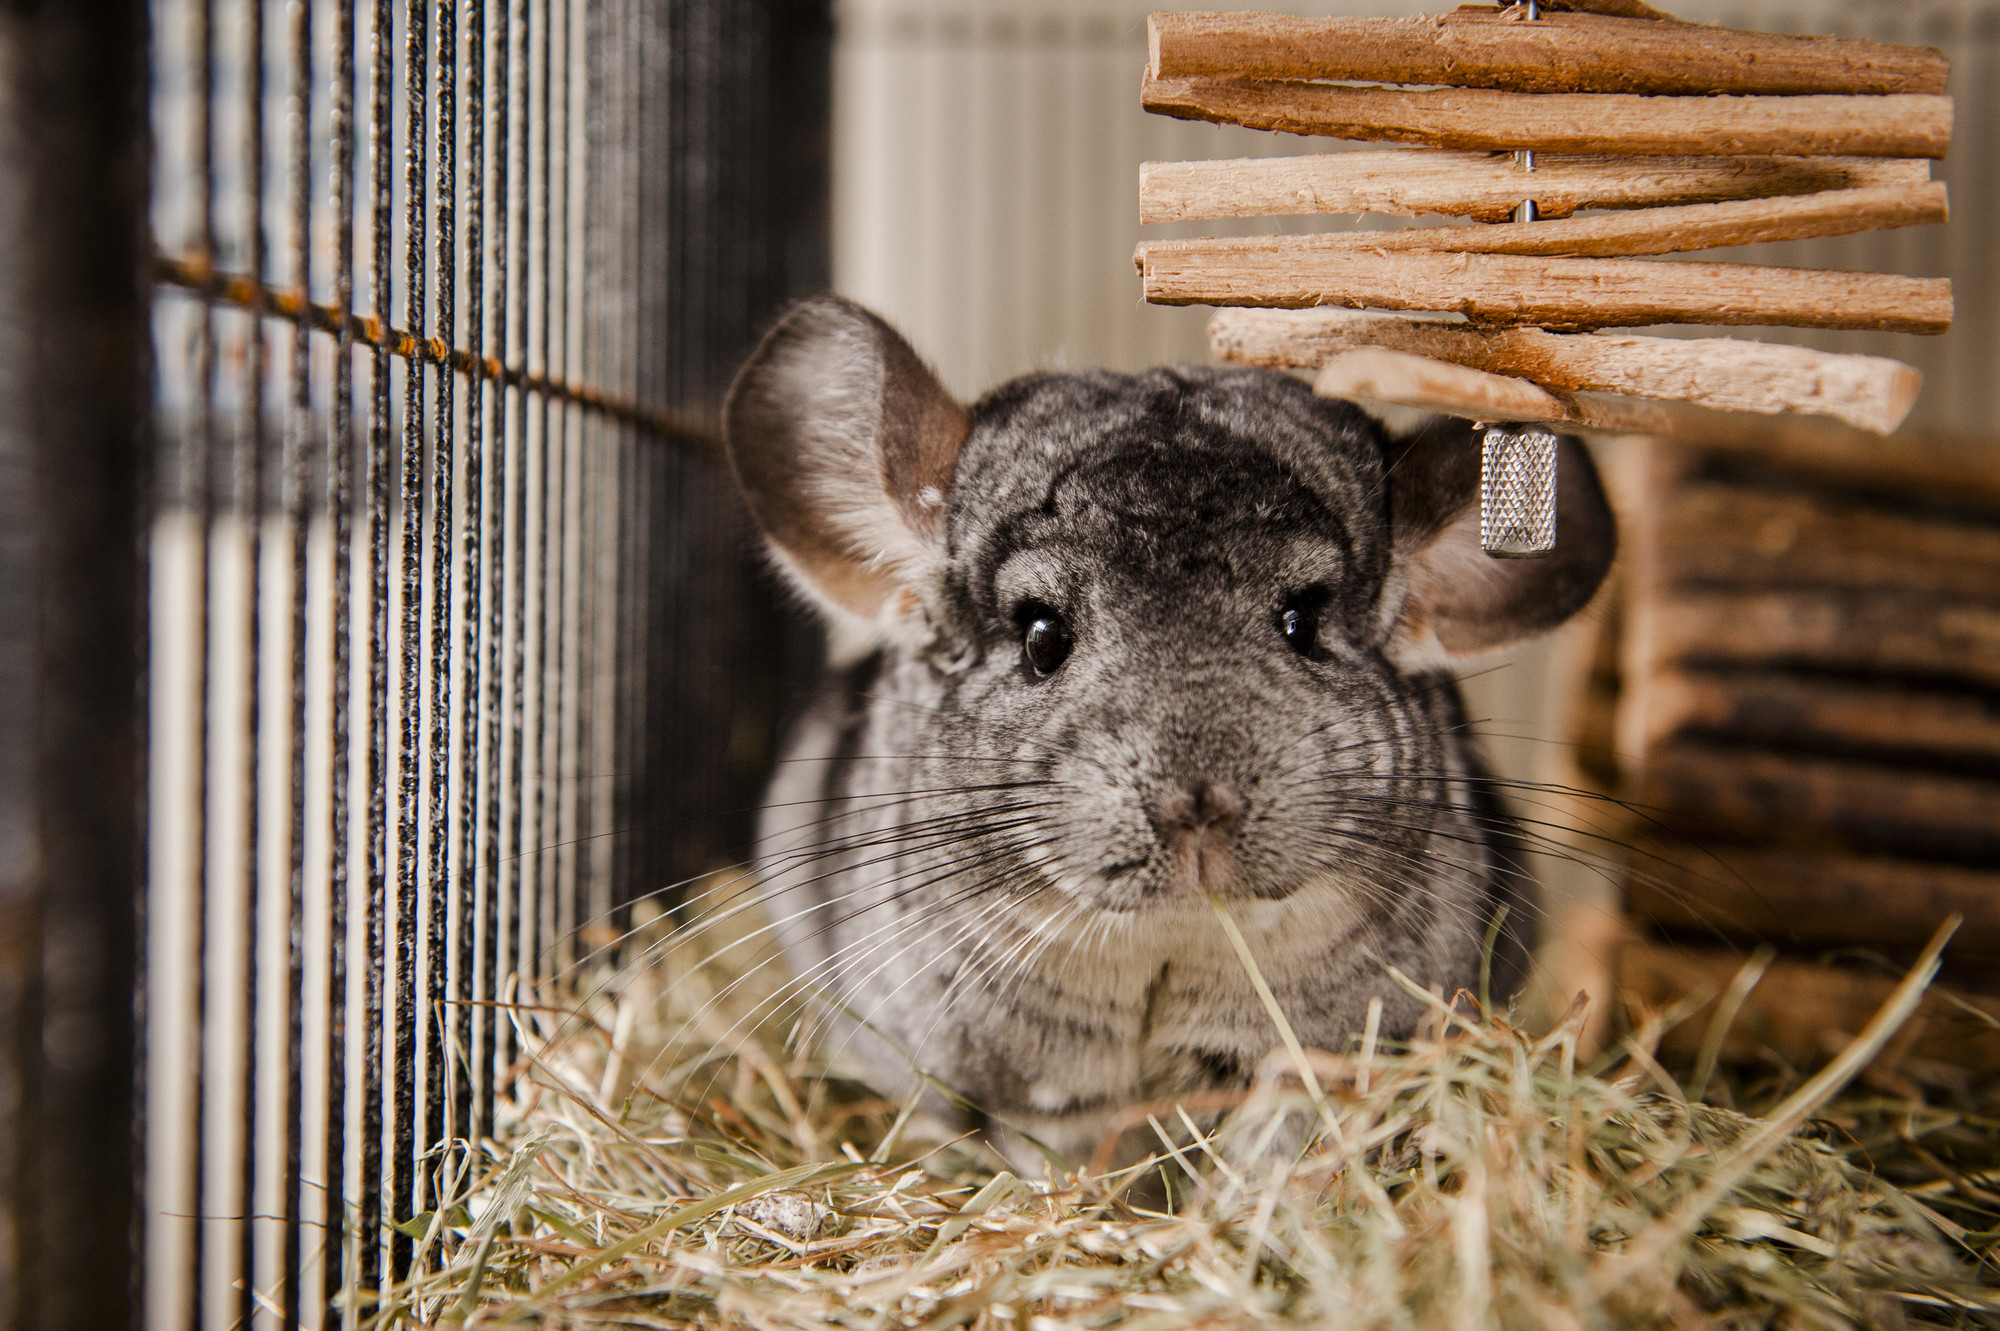 A grey chinchilla explores their hay bedding.